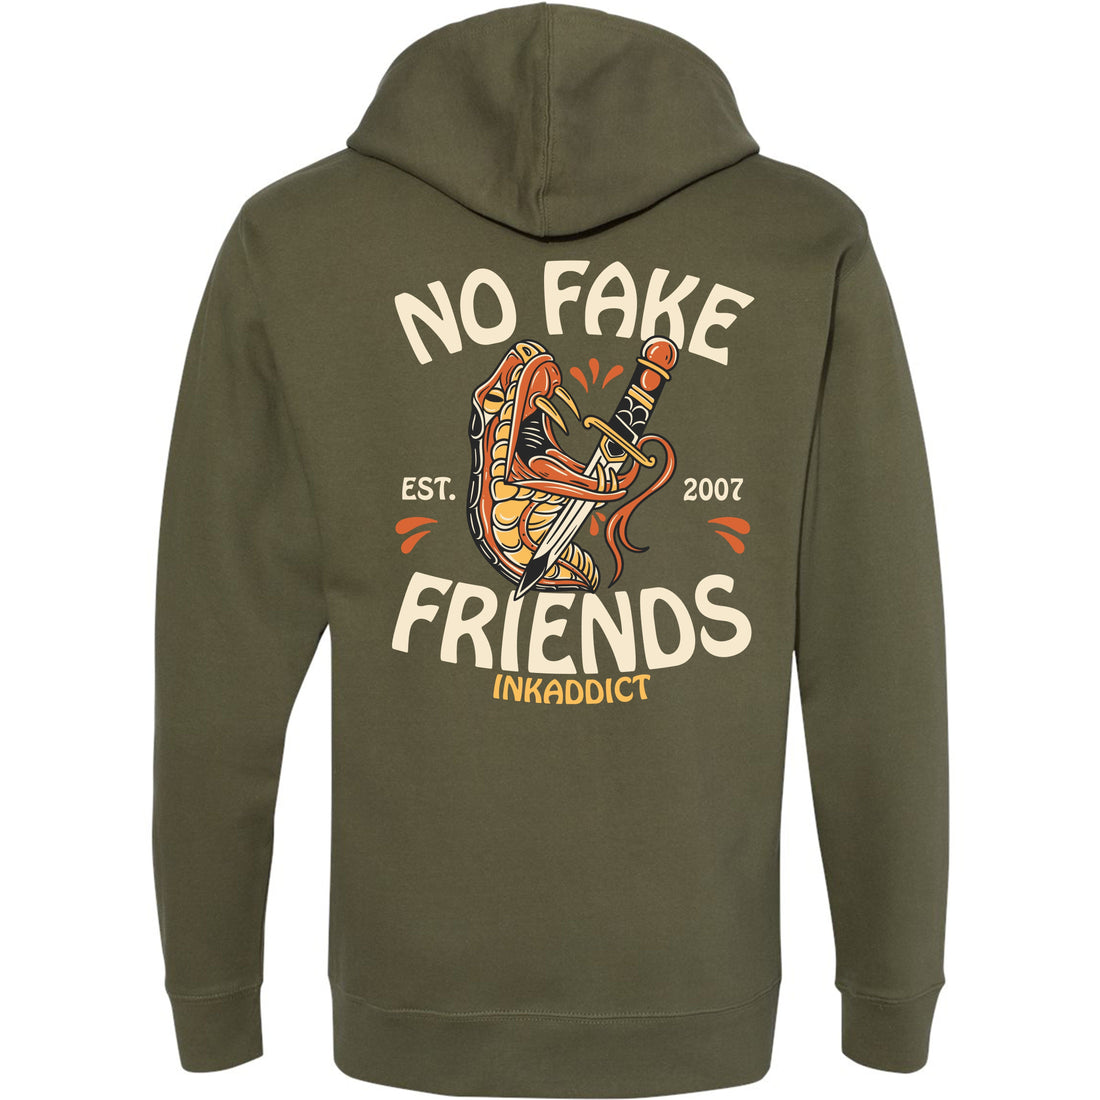 No Fake Friends II Hoodie